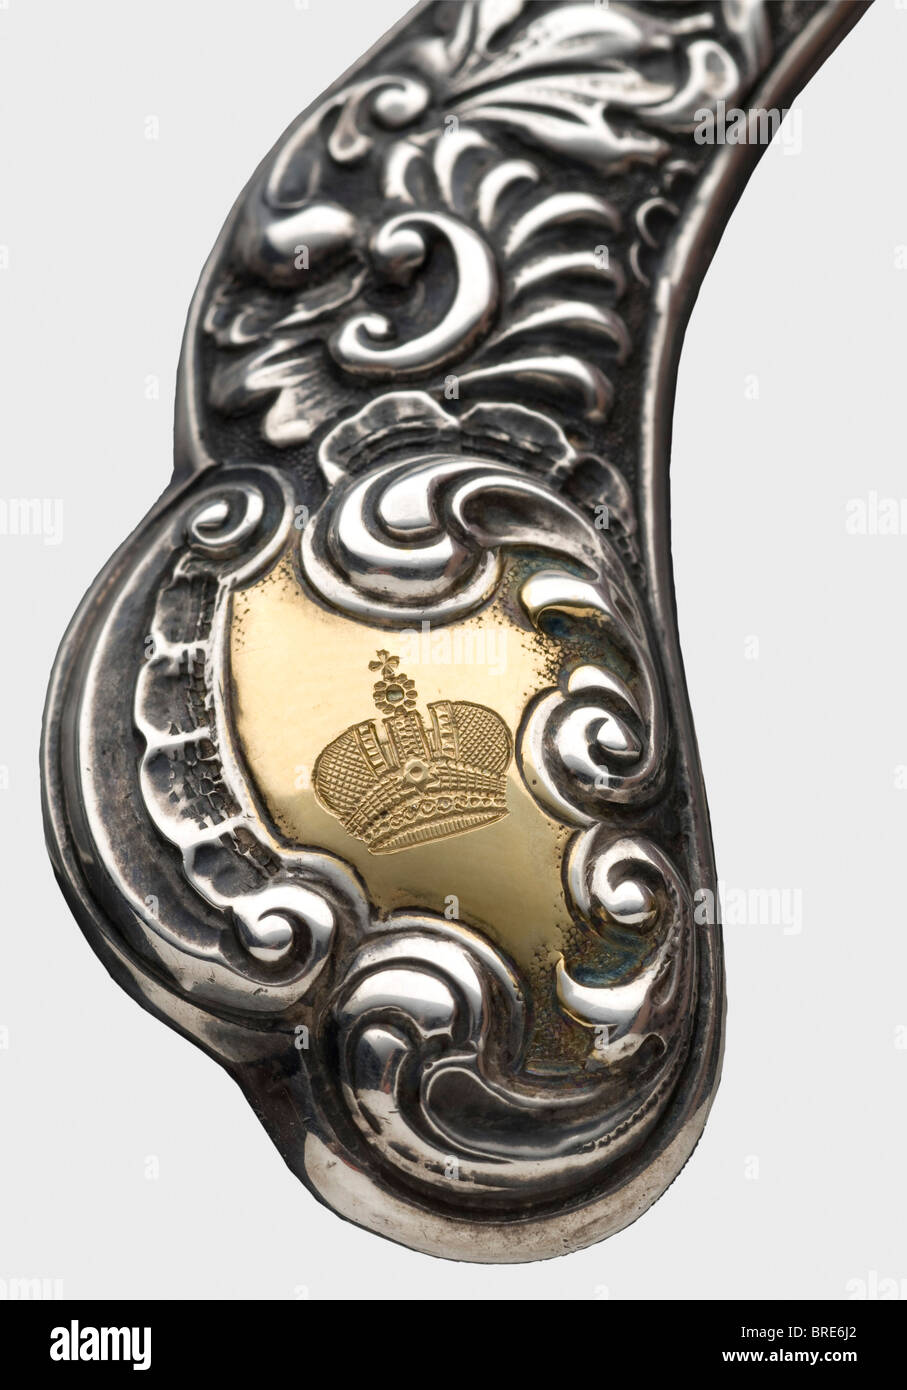 Una cornice d'argento e un apribottiglie d'argento, Londra, 1895/96 UNA cornice floreale con i marchi di Londra. Il bordo superiore porta il monogramma inciso "A" sotto una grande corona ducale su uno sfondo dorato. Il dorso è ricoperto di velluto (indossato) . Dimensioni: 21 x 17,5 cm. Il meccanismo di apertura della lettera ha un design simile, con il marchio 'Sling' e ciascun lato del manico inciso con la corona dello zar e la Tsarina rispettivamente, su uno sfondo dorato. Lunghezza 18,3 cm. Storico, storico, 19th secolo, oggetto, oggetti, alambicchi, taglio, ritagli, taglio, Foto Stock